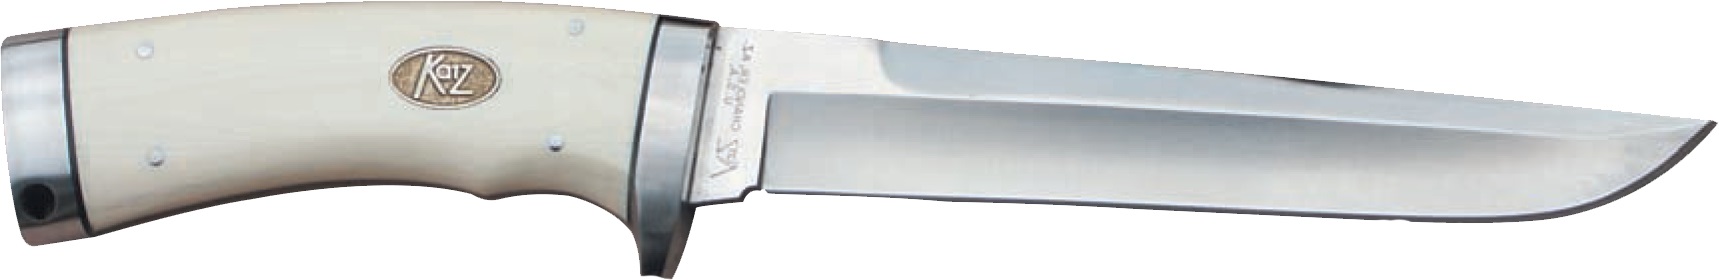 Нож Katz K1006 WM - фото 1